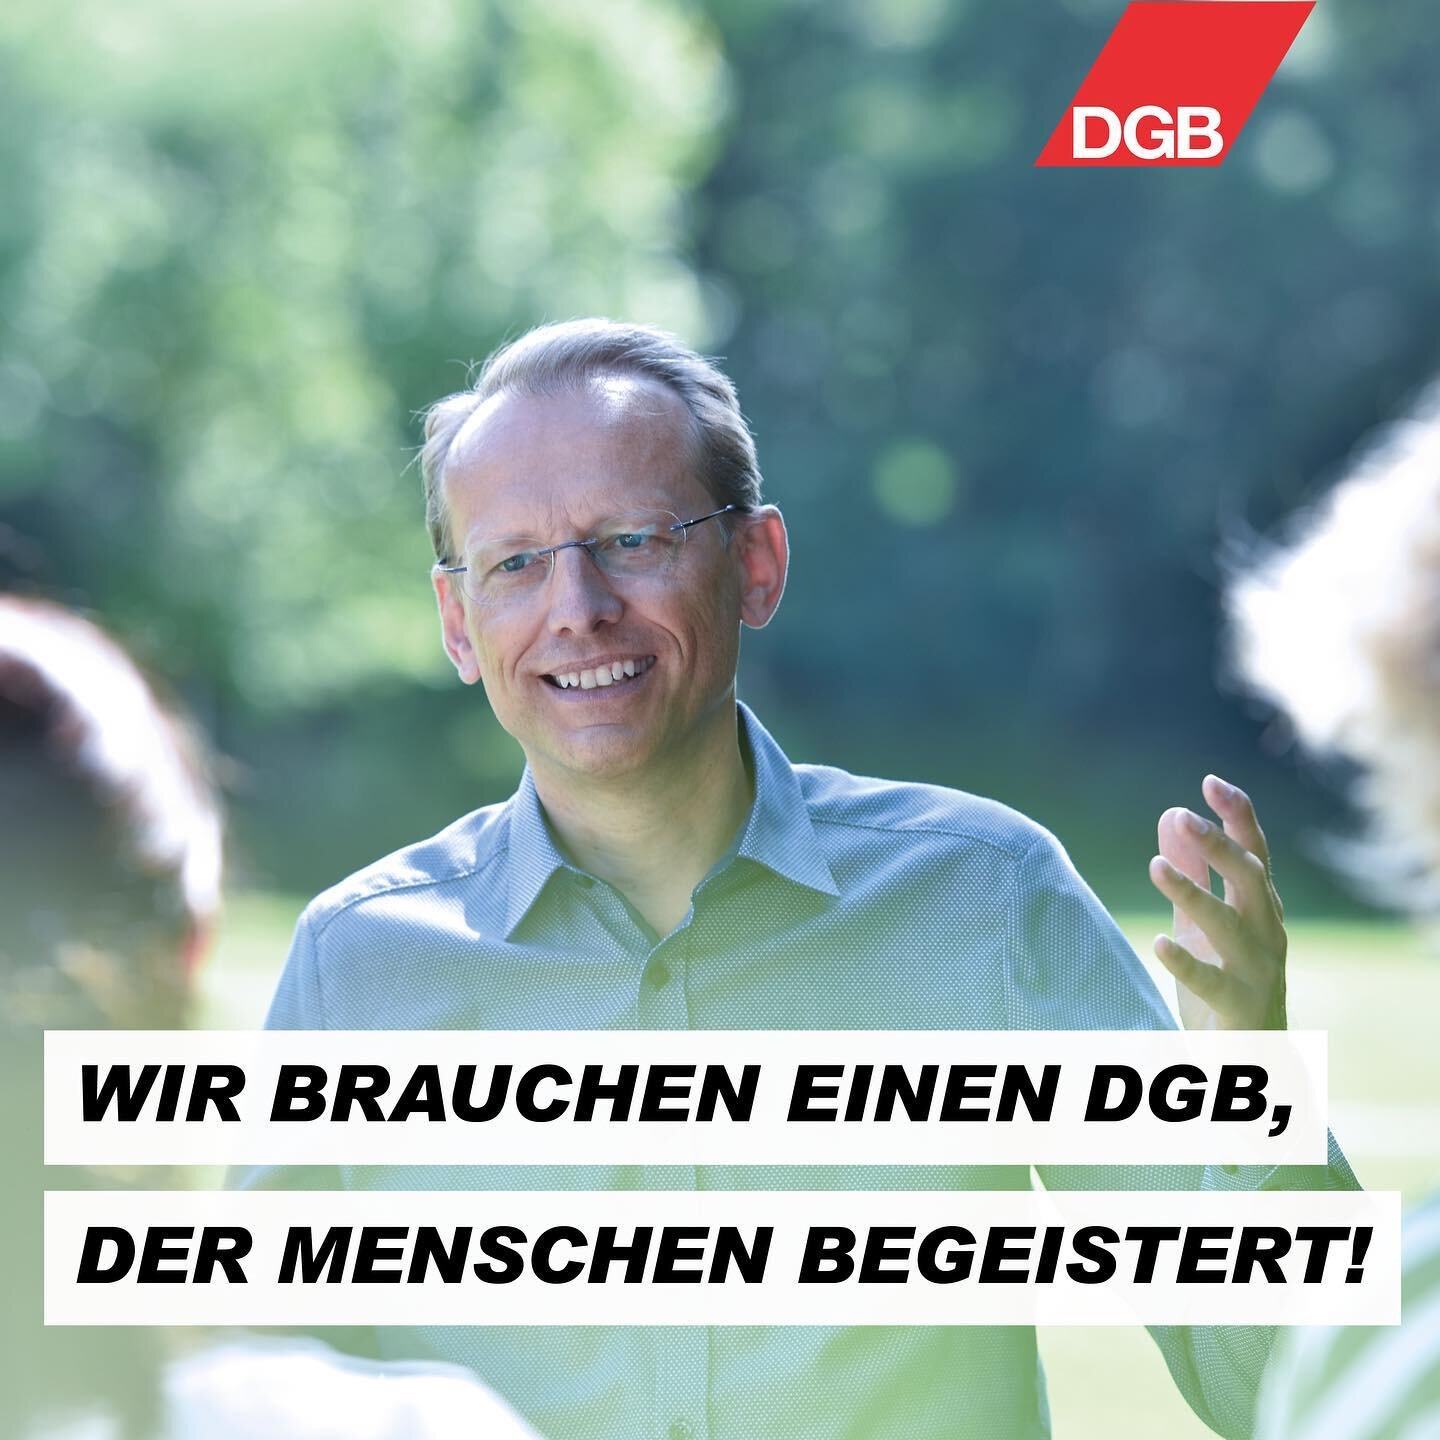 Wir brauchen eine Politik des DGB mit gemeinsamen Visionen und einem grundlegenden Ziel:
eine erstrebenswerte Gesellschaft, die die Grenzen des bestehenden sprengt.
Einen DGB, der die Menschen mitnimmt und begeistert.

#BernhardStiedl #DGB #Bayern #s